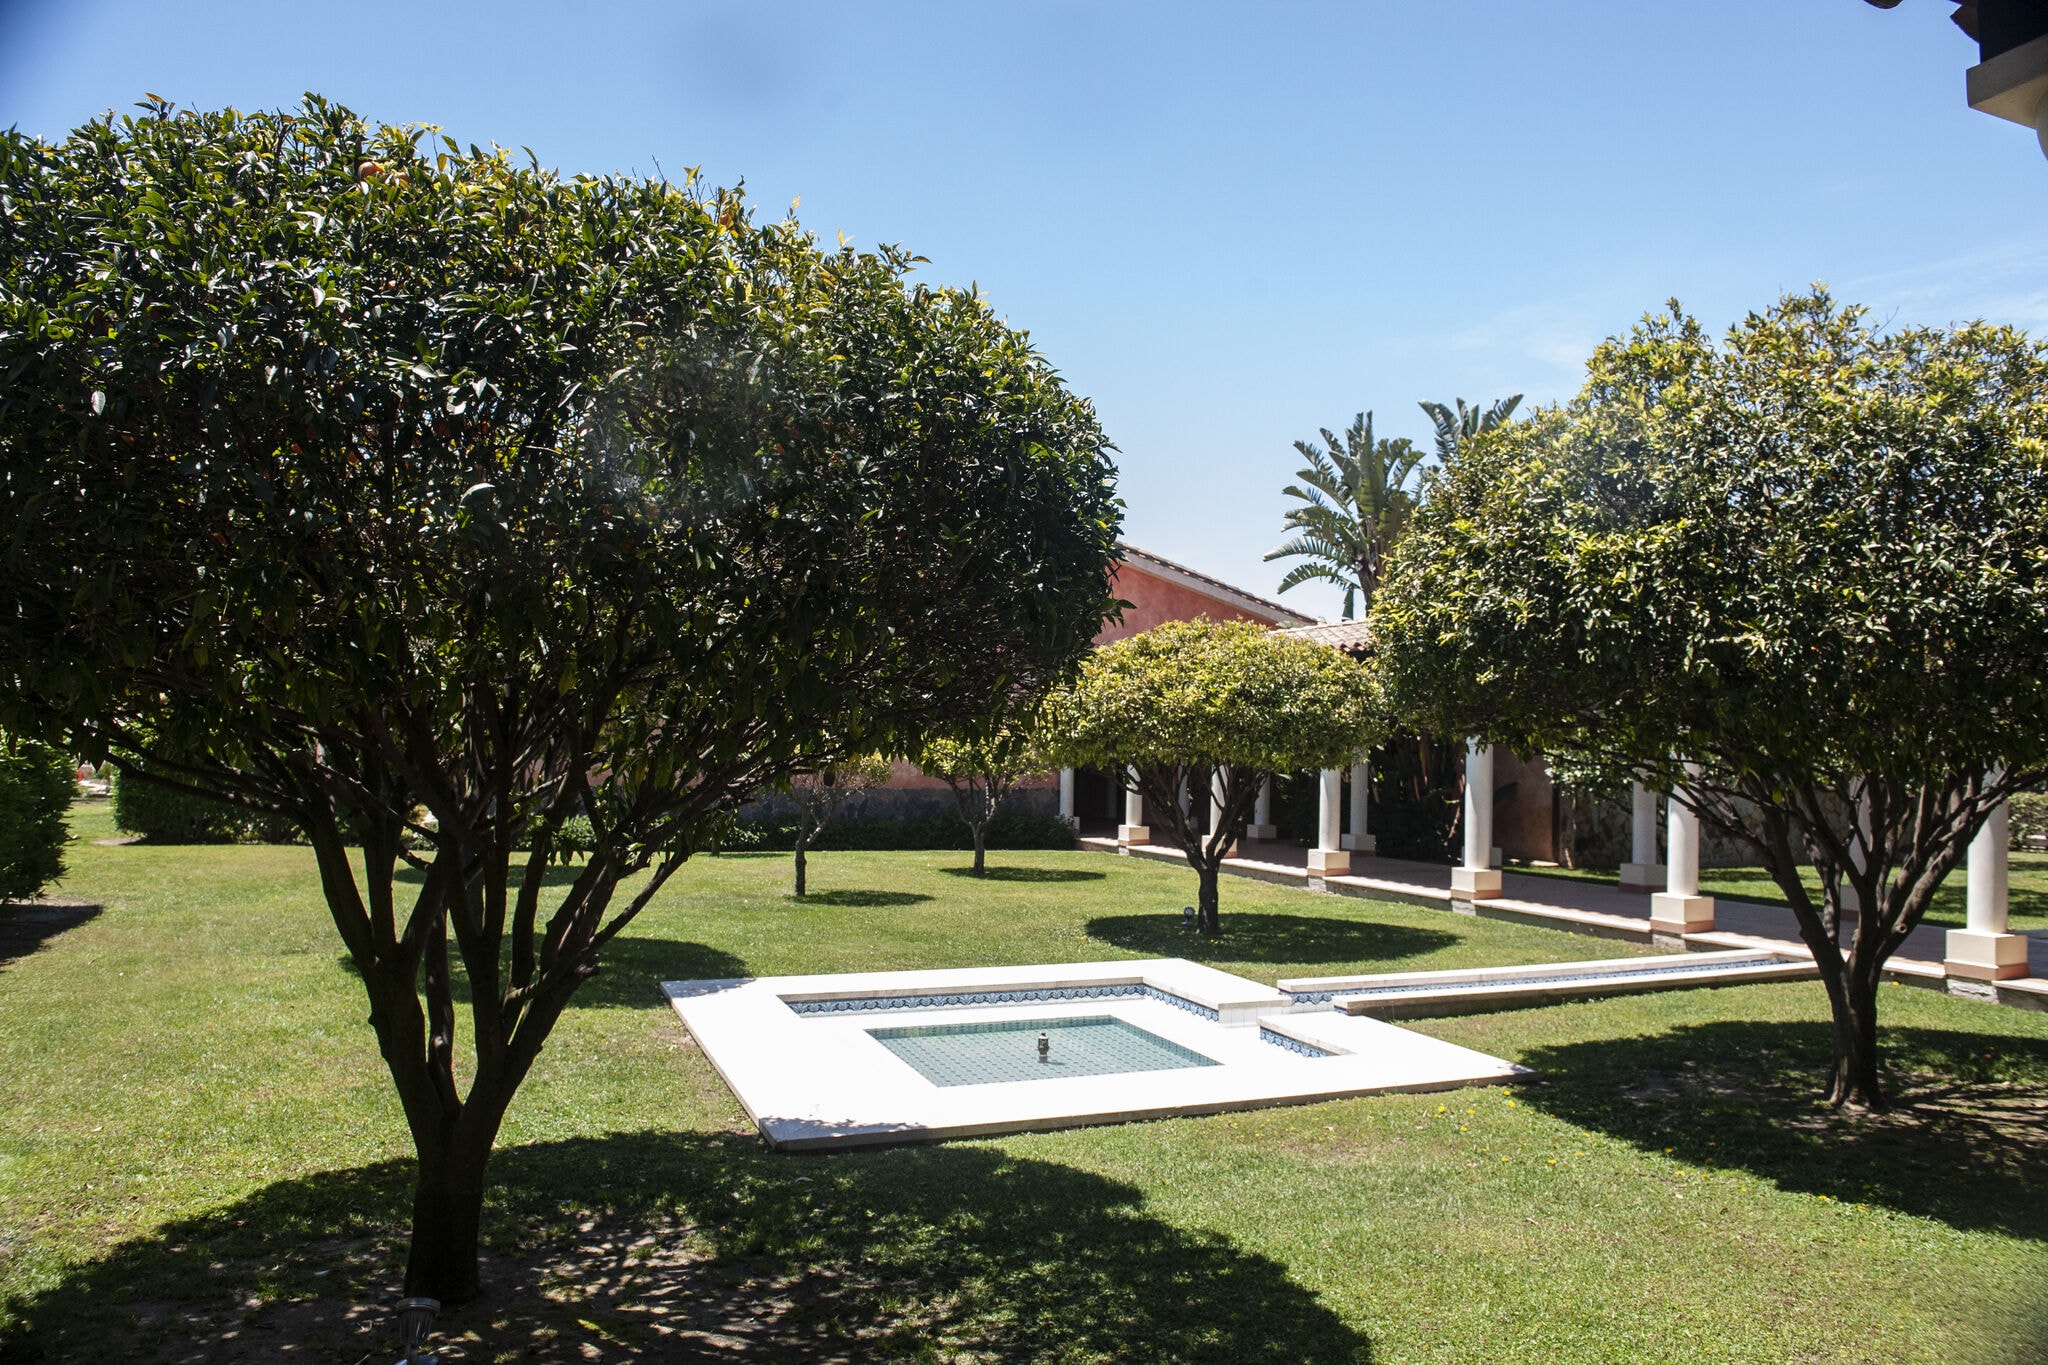 Bel appartement en Sardaigne avec piscine